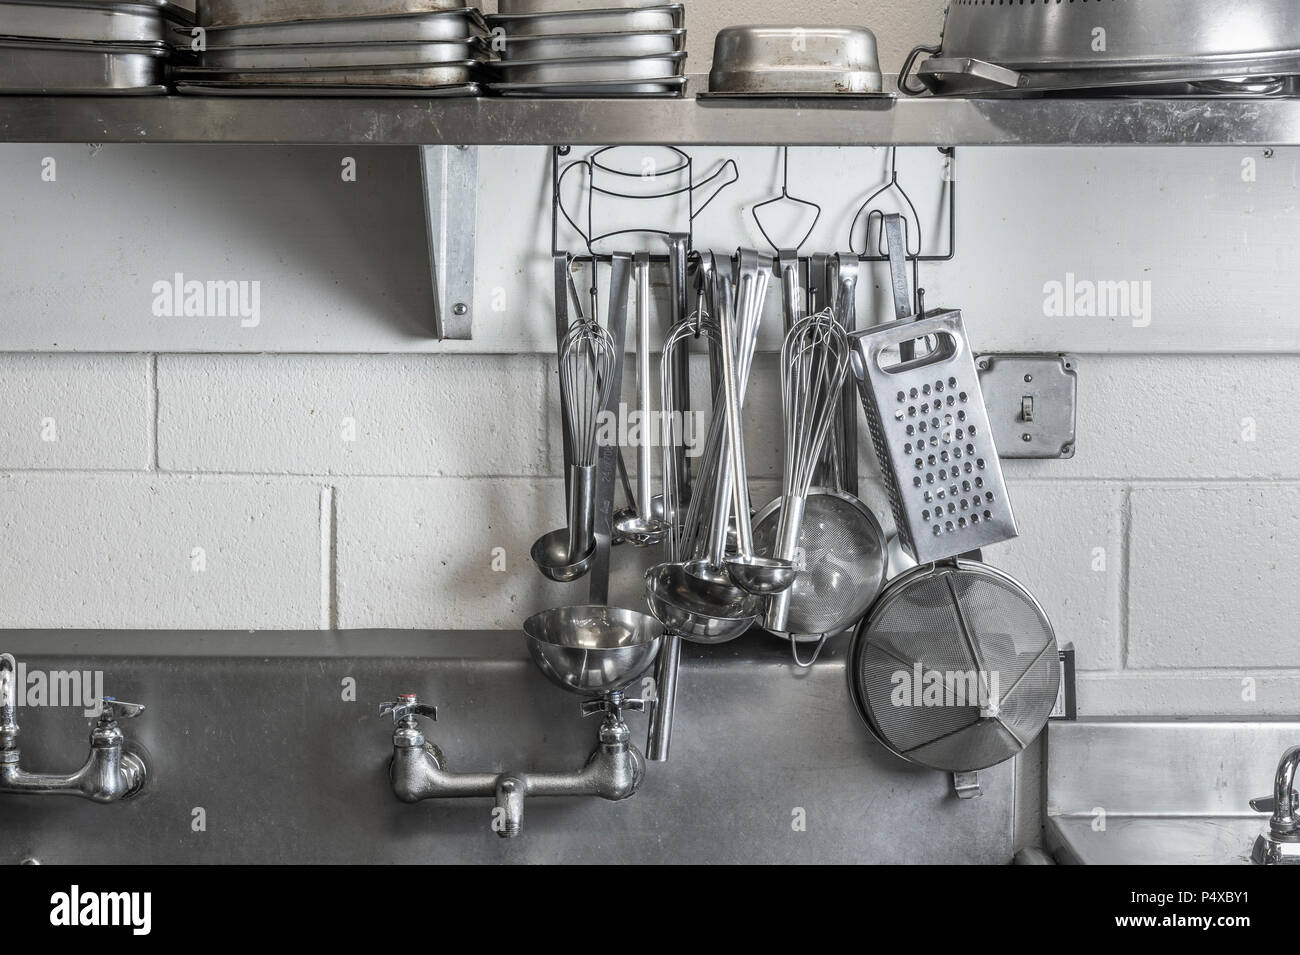 Ristorante Cucina commerciale in Acciaio Inox utensili da cucina Foto Stock